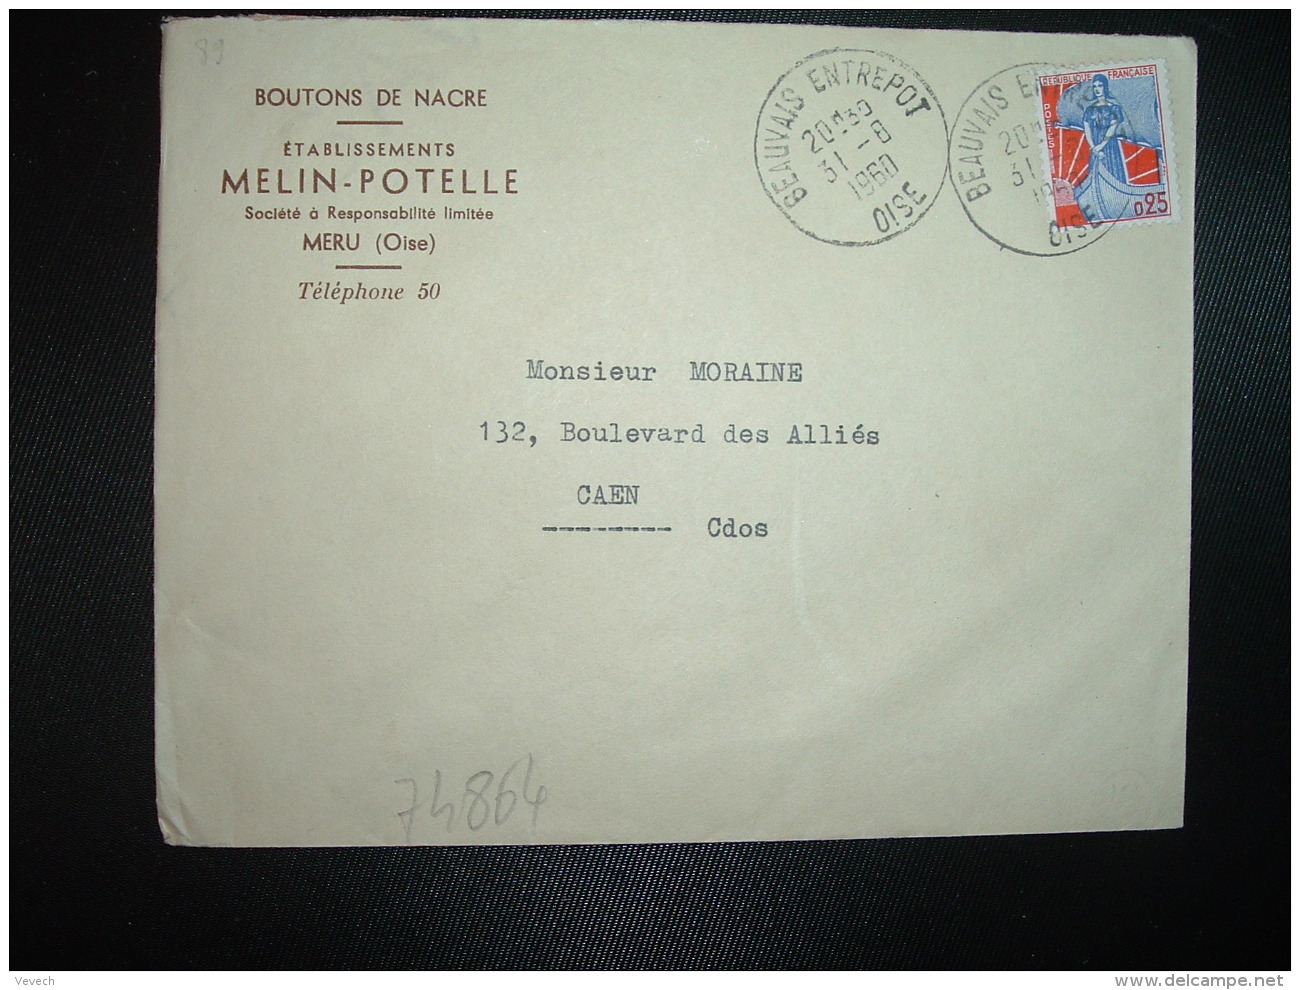 LETTRE TP MARIANNE A LA NEF 0,25 OBL.31-8 1960 BEAUVAIS ENTREPOT OISE (60) Ets MELIN POTELLE MERU BOUTONS DE NACRE - Poste Ferroviaire